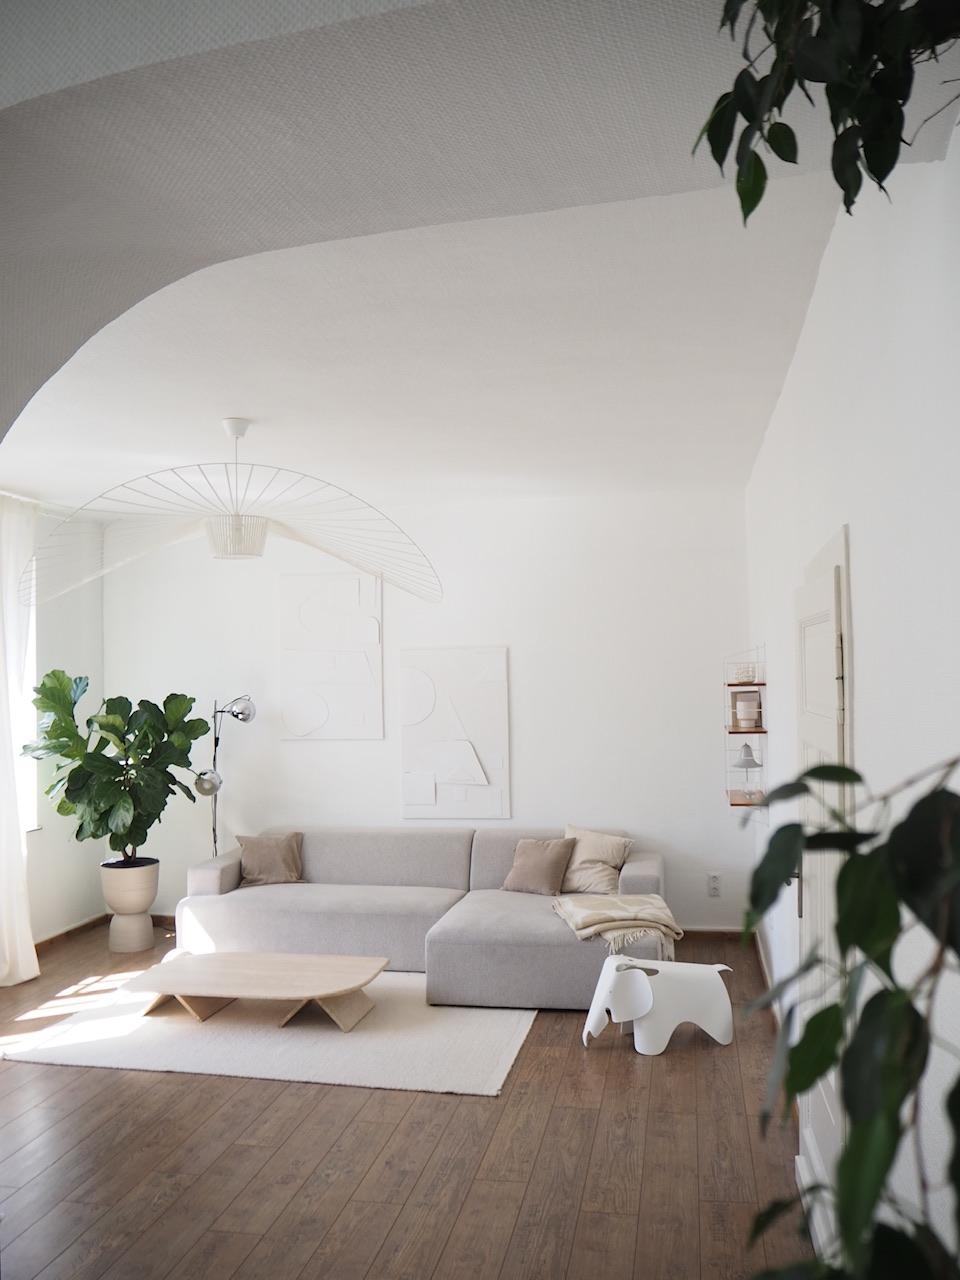 #wohnzimmer #livingroom #bysidde #couch #couchtisch #minimalist #diybild #pflanzenliebe #whiteliving #altbauliebe 